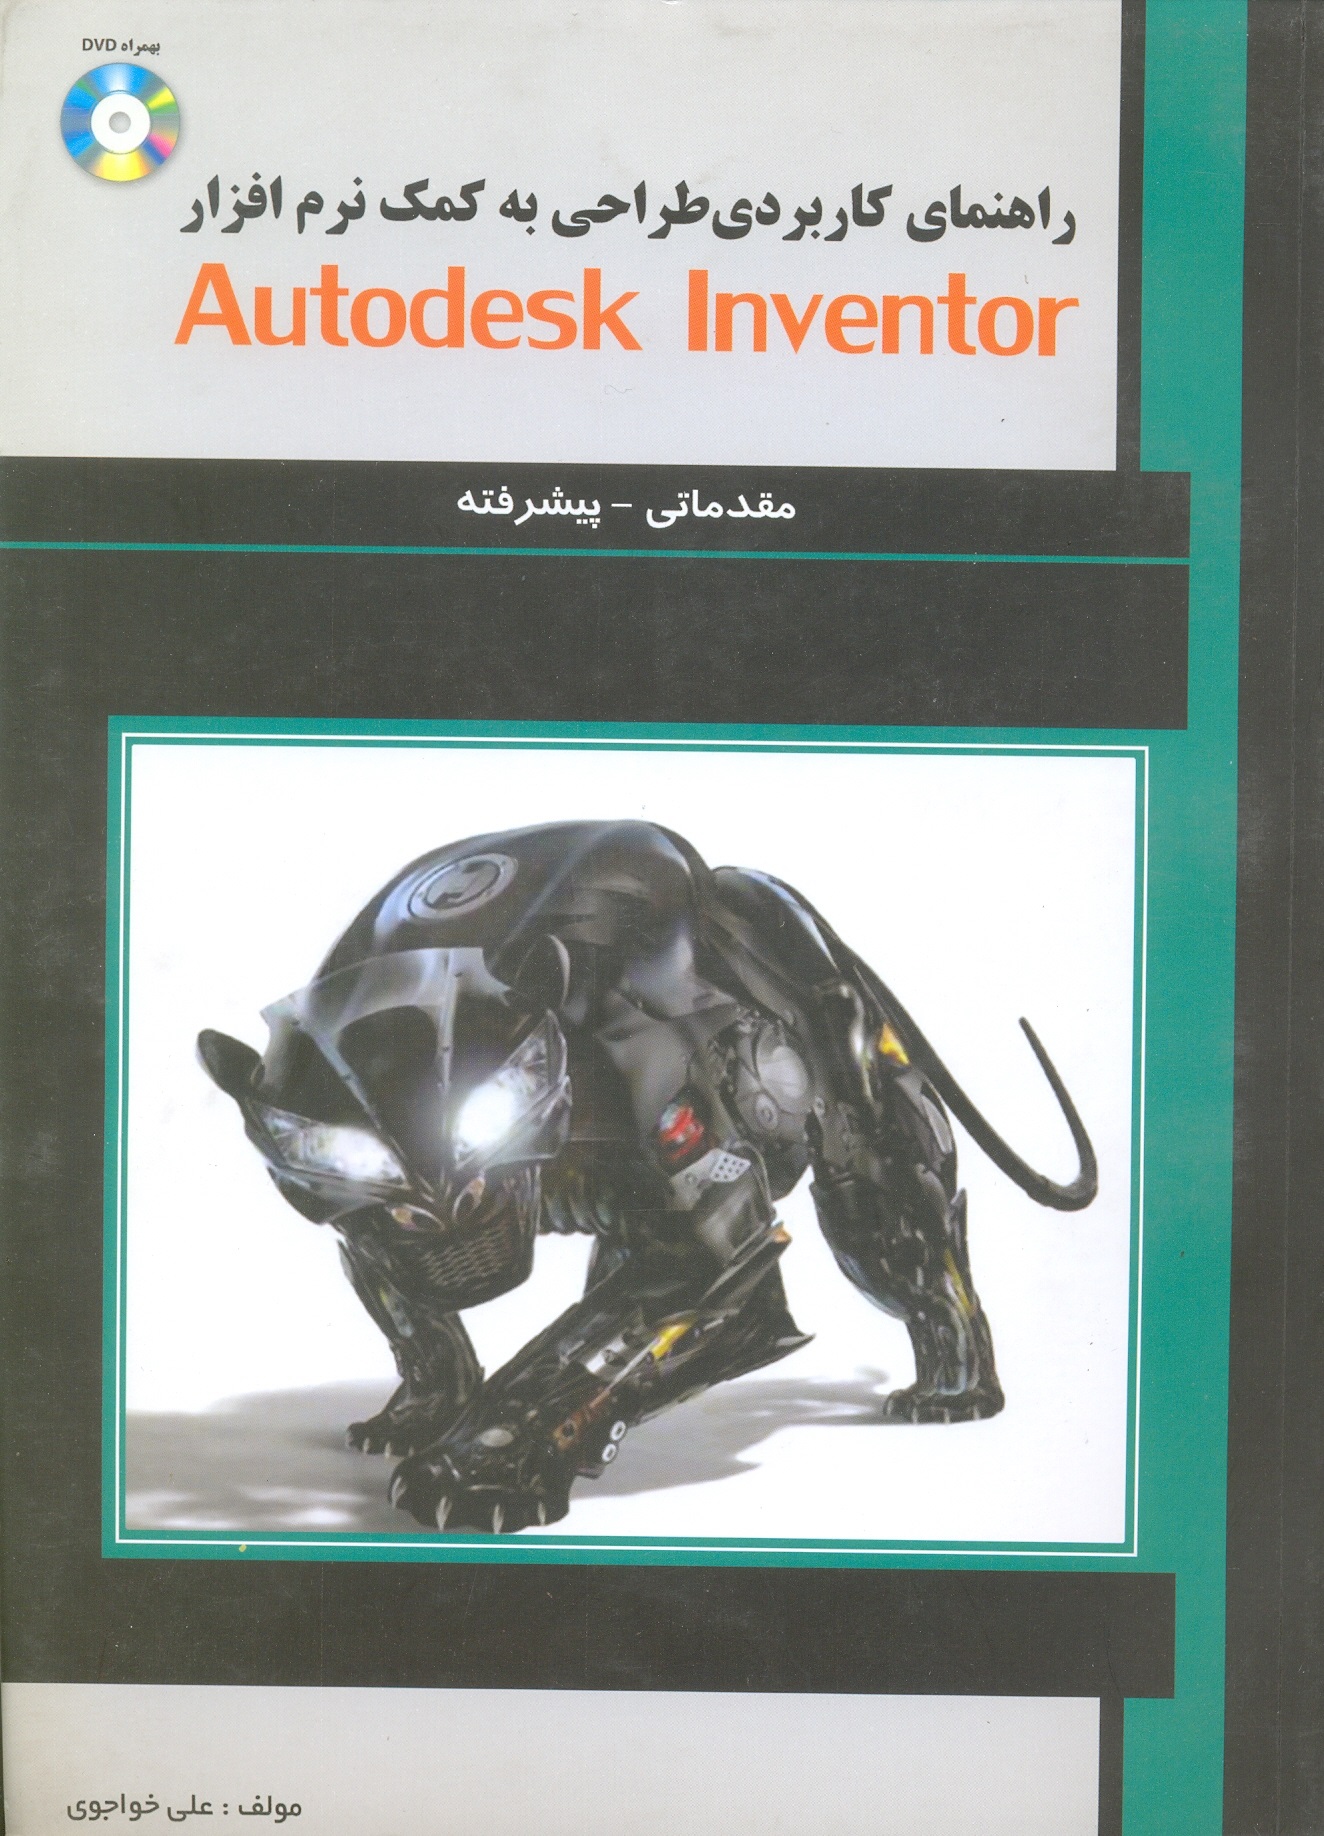 راهنمای کاربردی طراحی به کمک Autodesk anventor+dvd مقدماتی و پیشرفته/خواجوی/علمیران